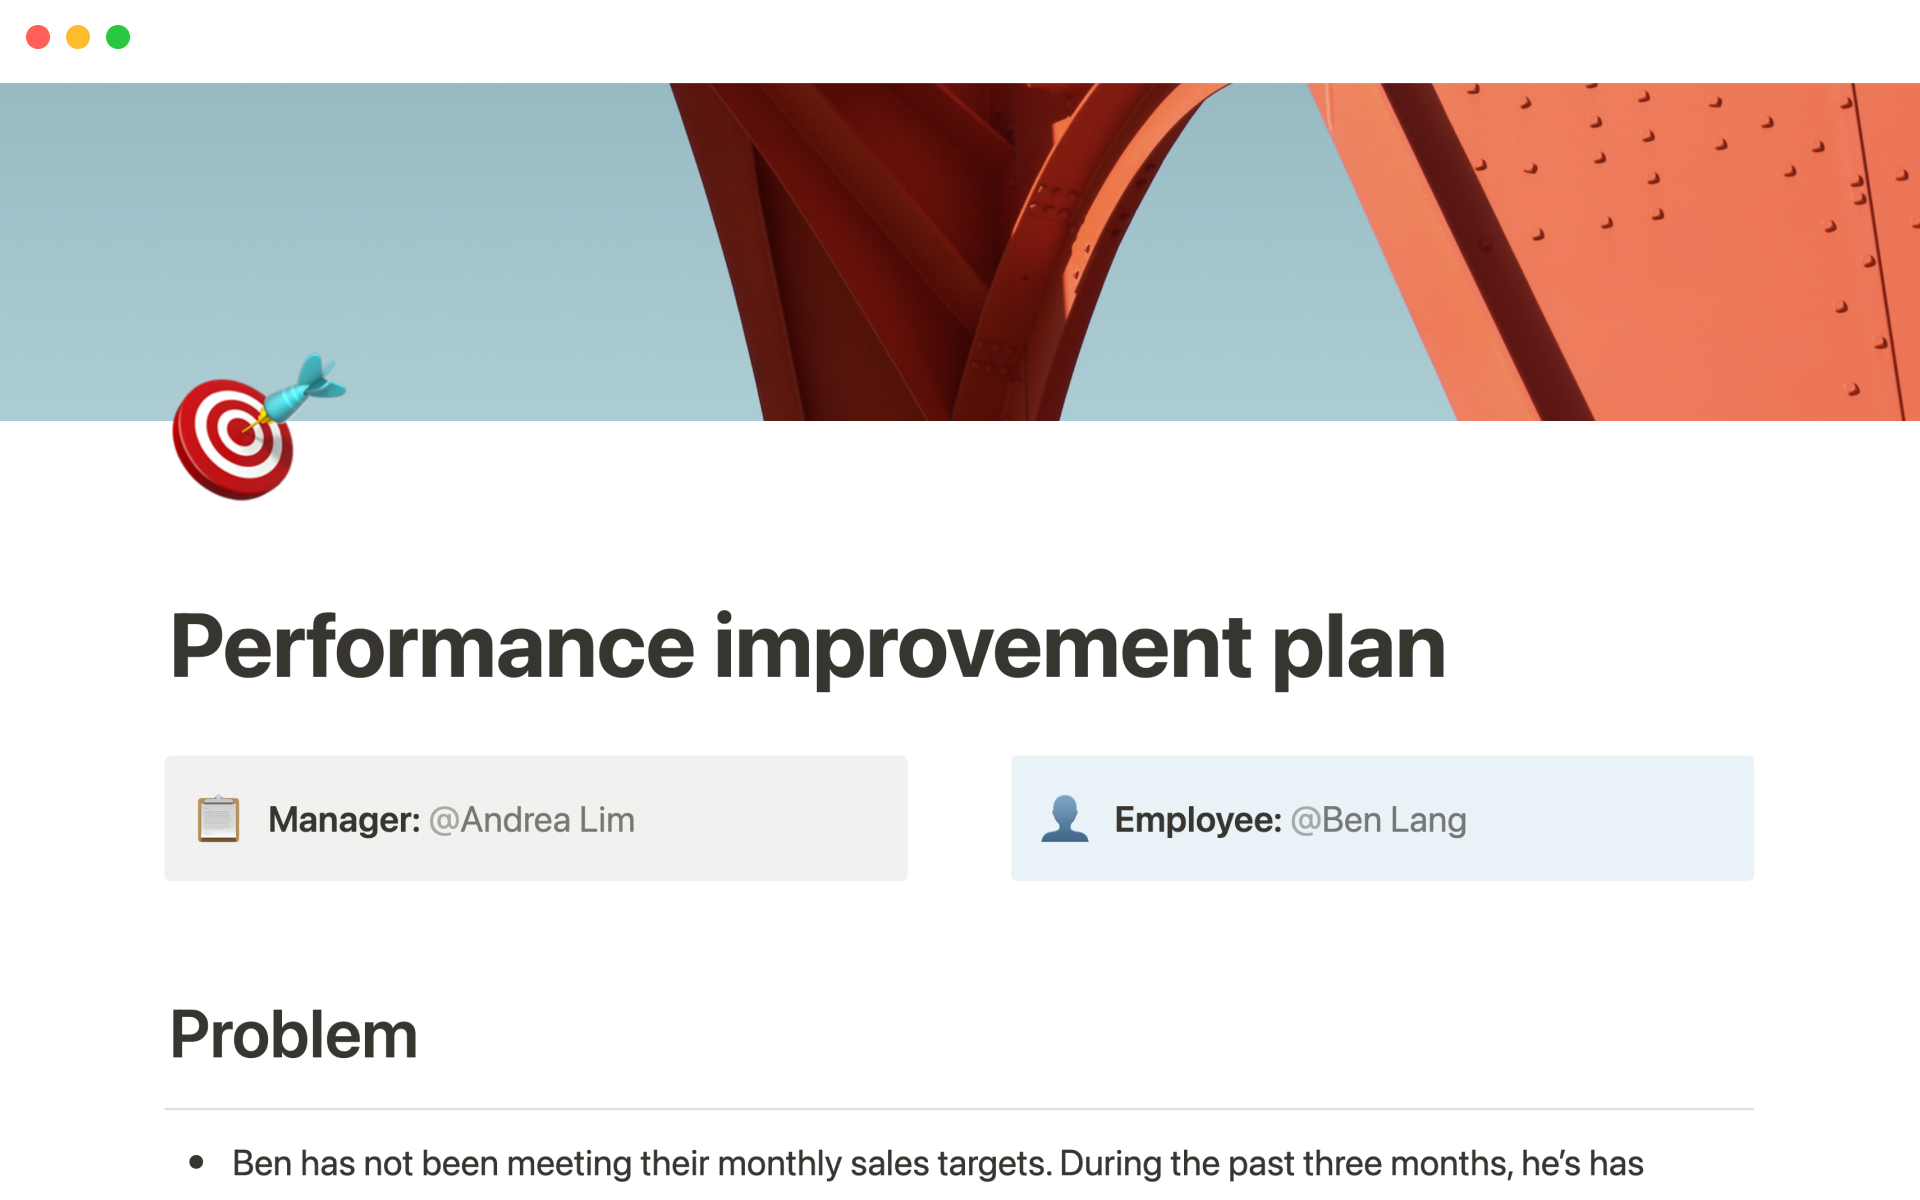 Aperçu du modèle de Performance improvement plan